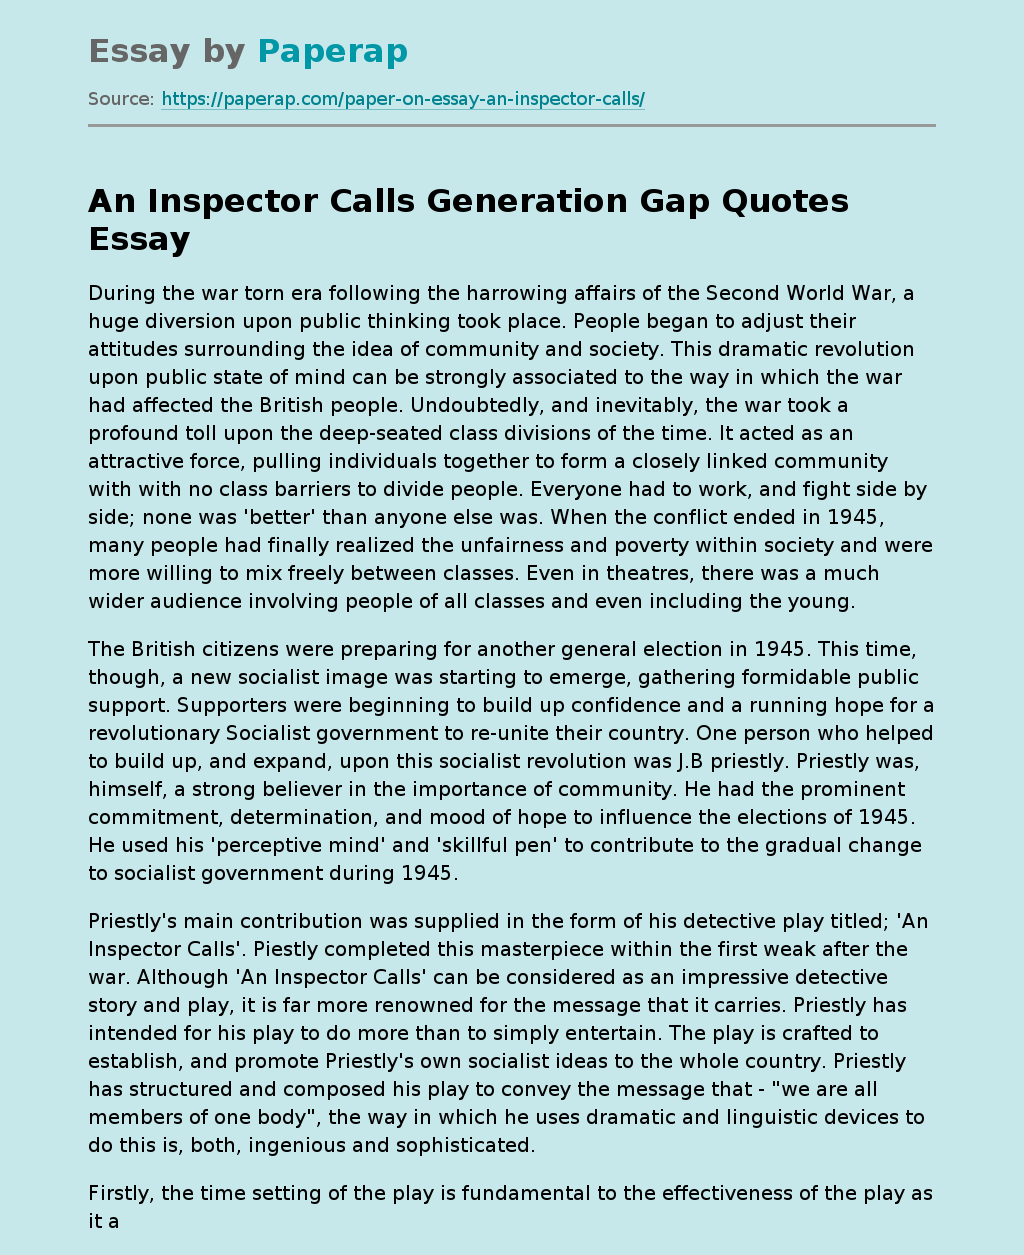 An Inspector Calls Generation Gap Quotes